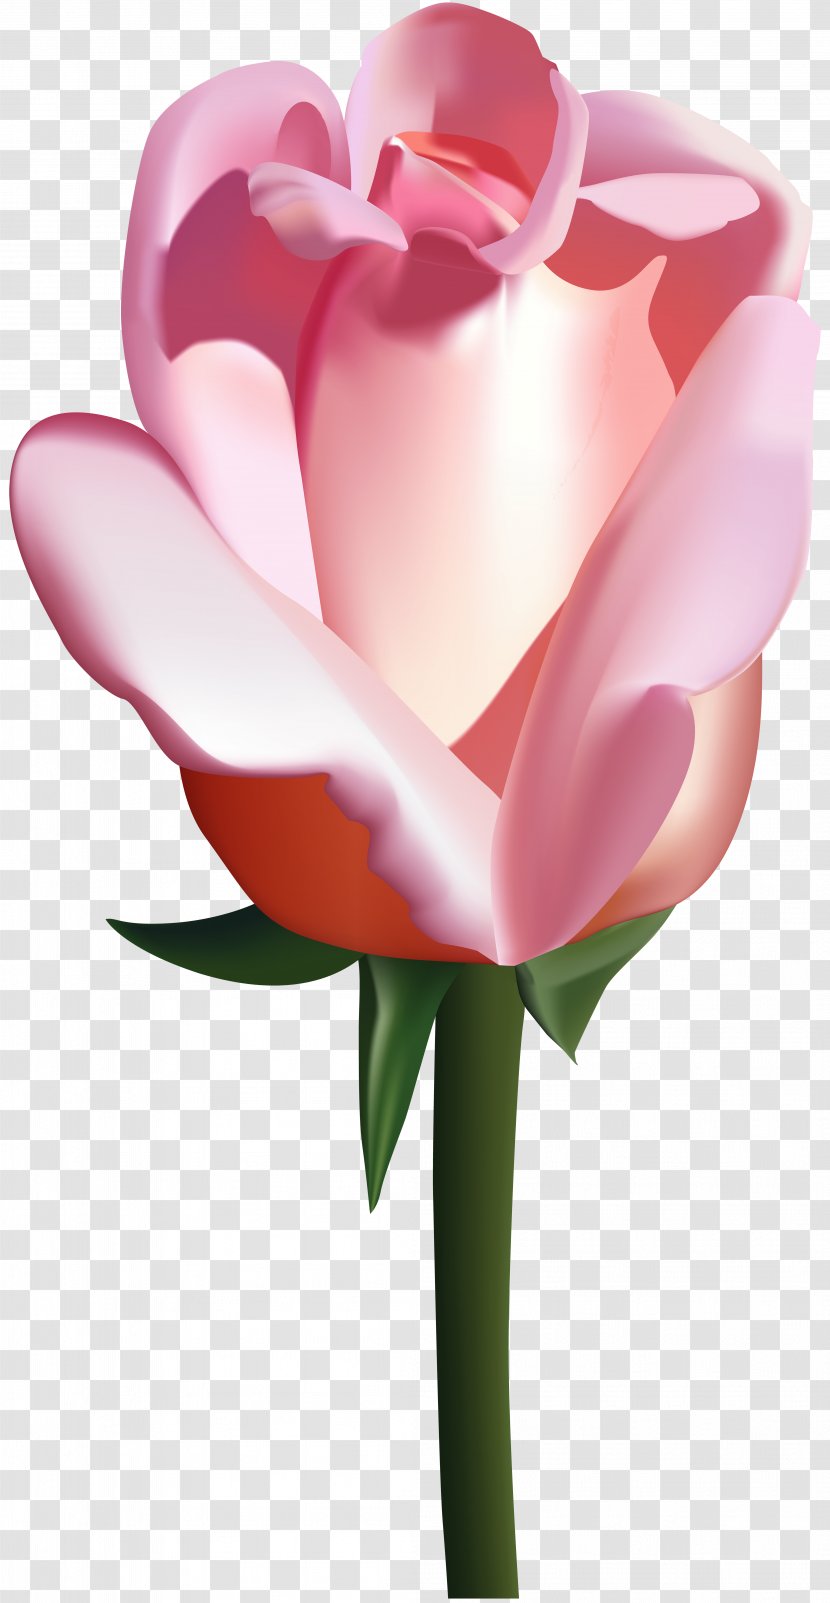 Garden Roses Clip Art - Rose - Pink Image Transparent PNG